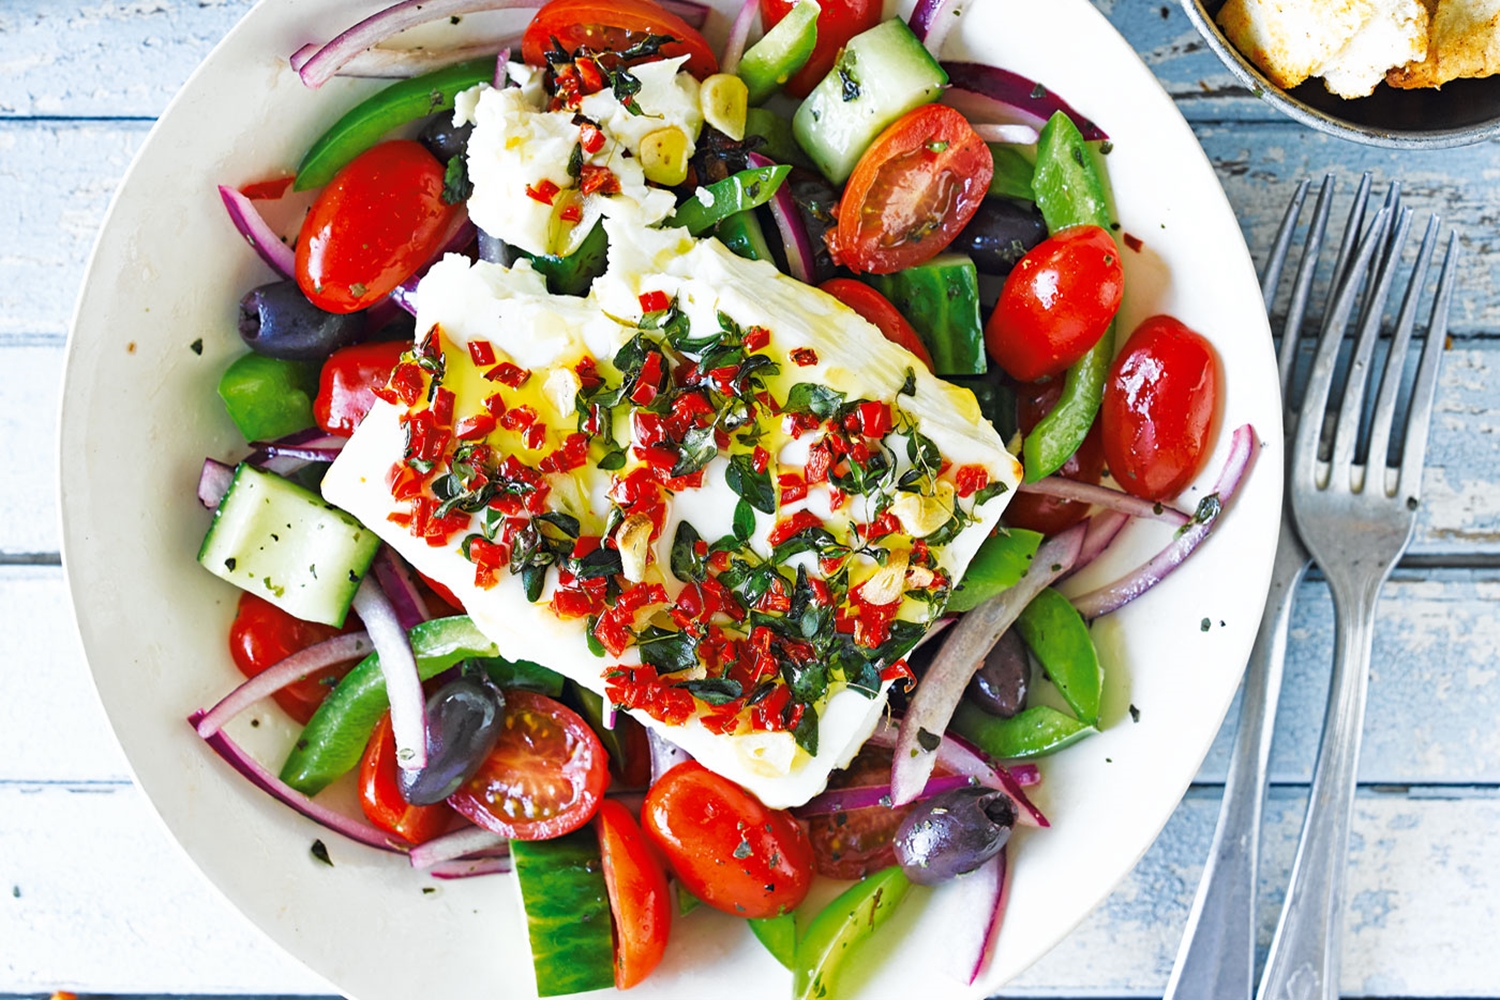 Σε ποιο μέρος της Ελλάδας έφτιαξαν για πρώτη φορά χωριάτικη σαλάτα;